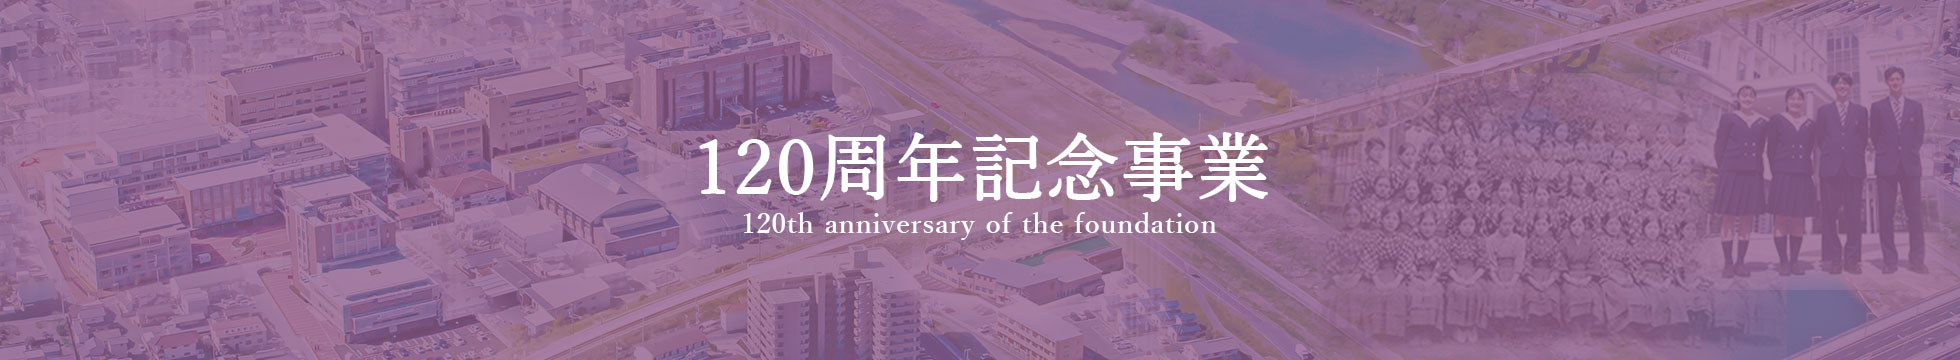 就実学園 120周年記念事業 120th anniversary of the foundation of the school